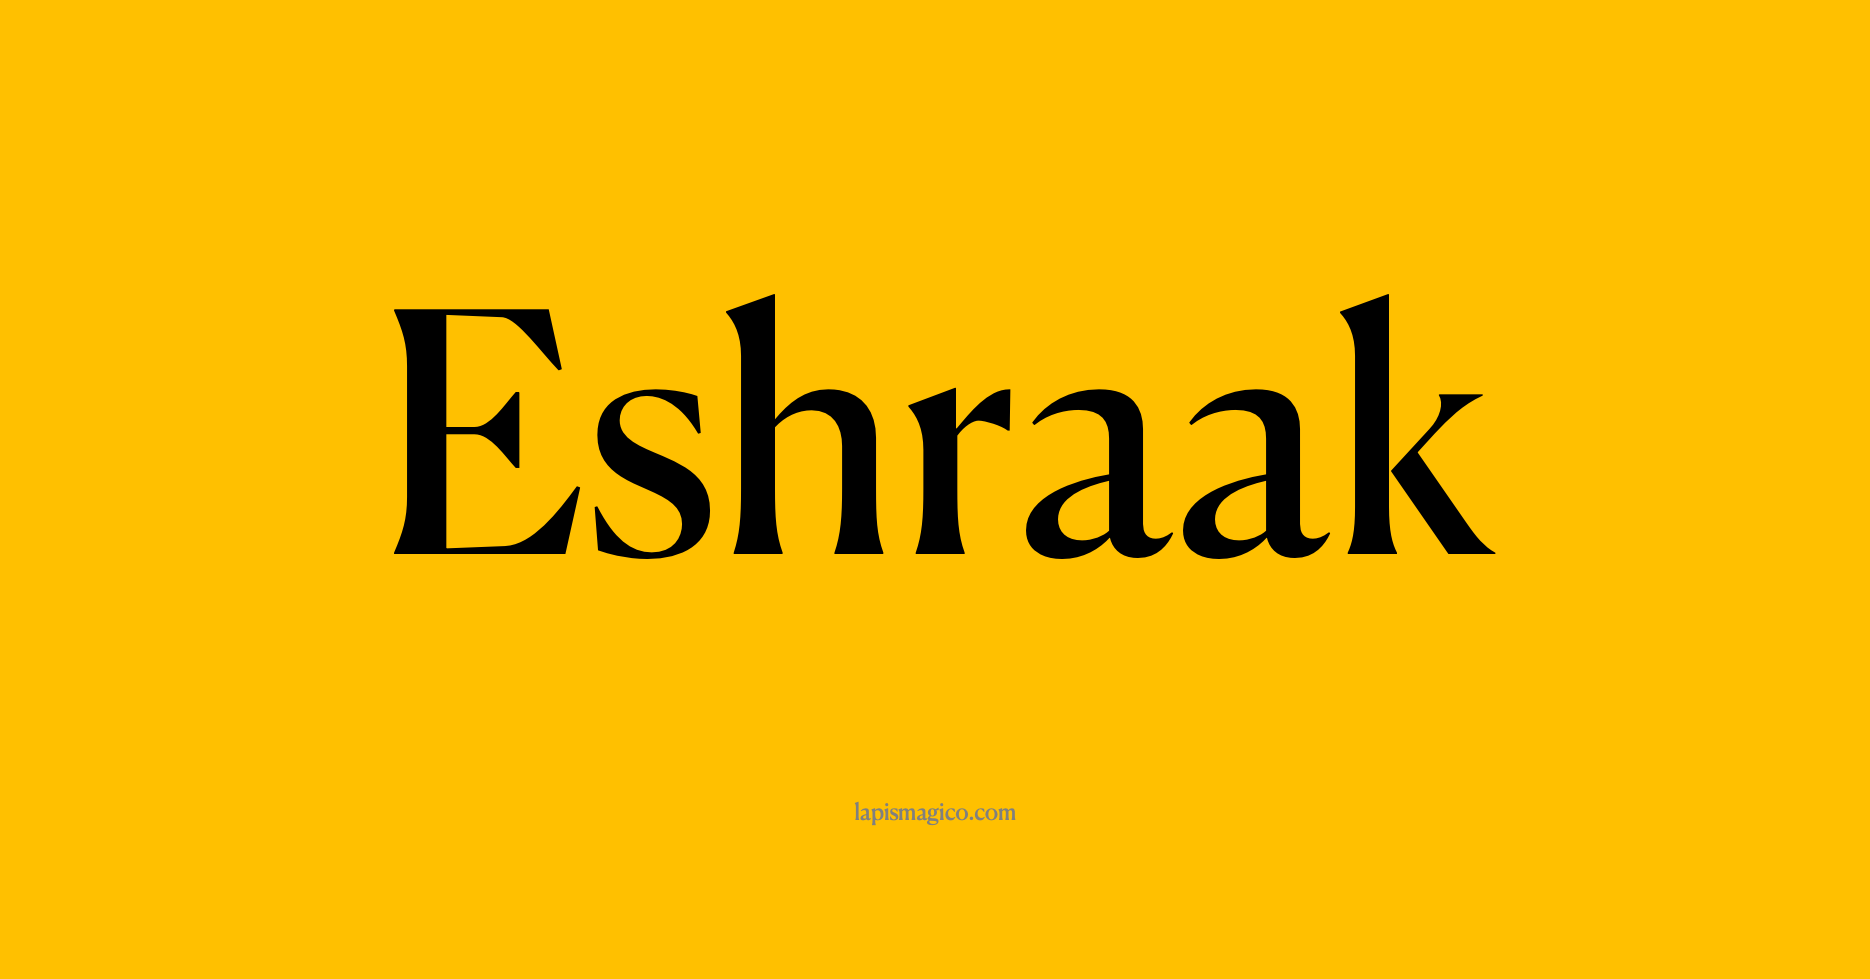 Nome Eshraak, ficha divertida com pontilhado para crianças